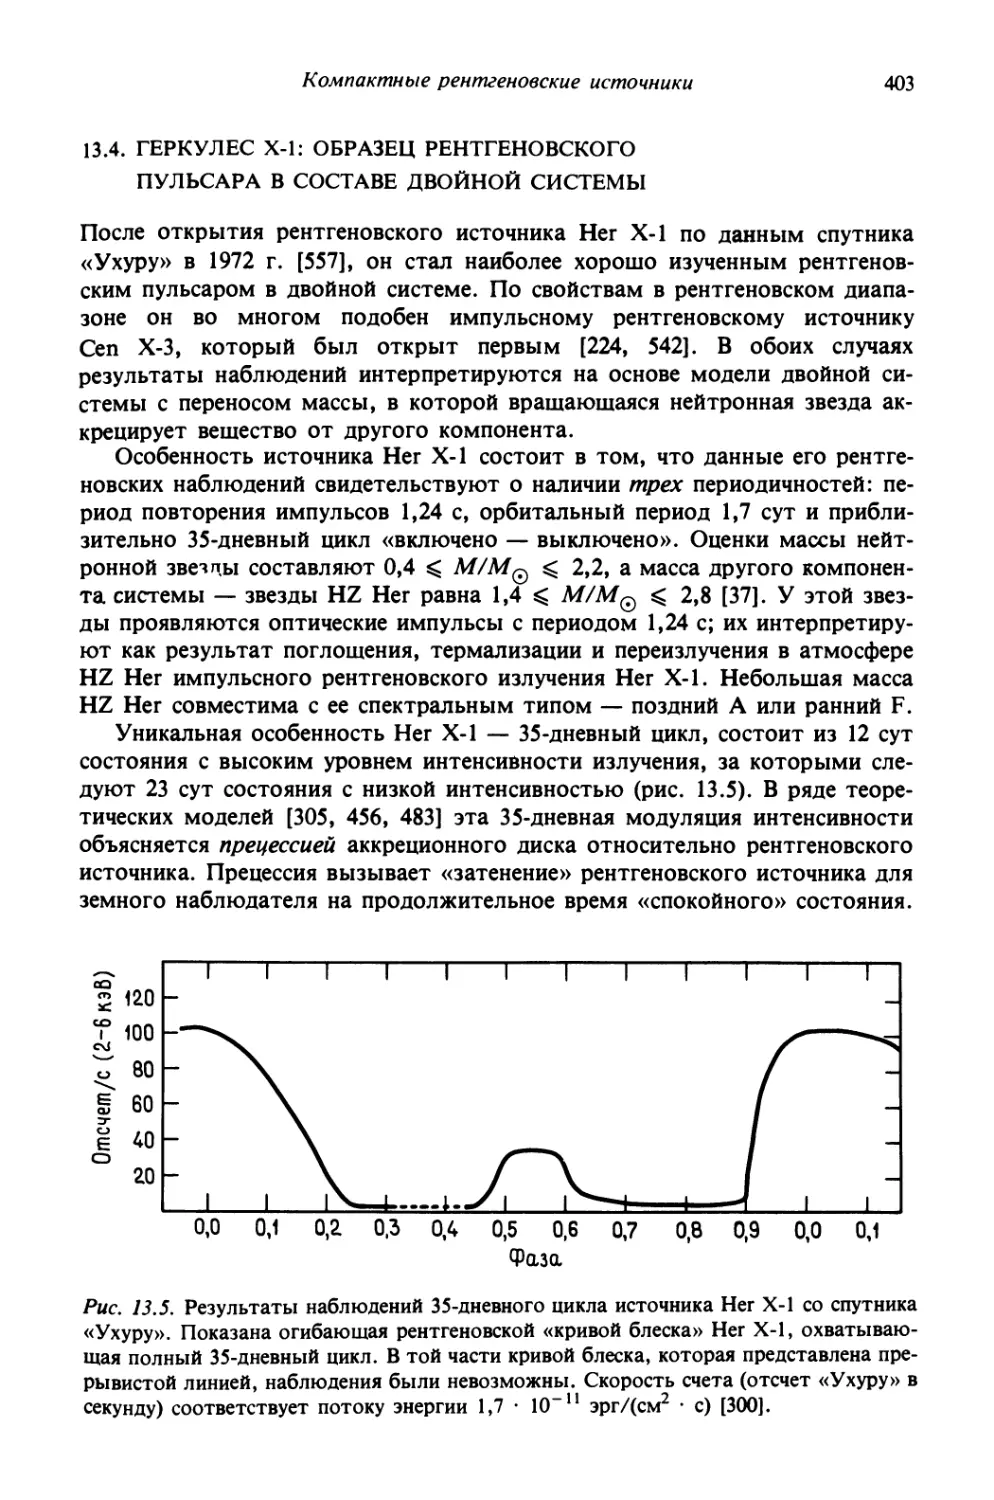 13.4. Геркулес Х-1: образец рентгеновского пульсара в составе двойной системы